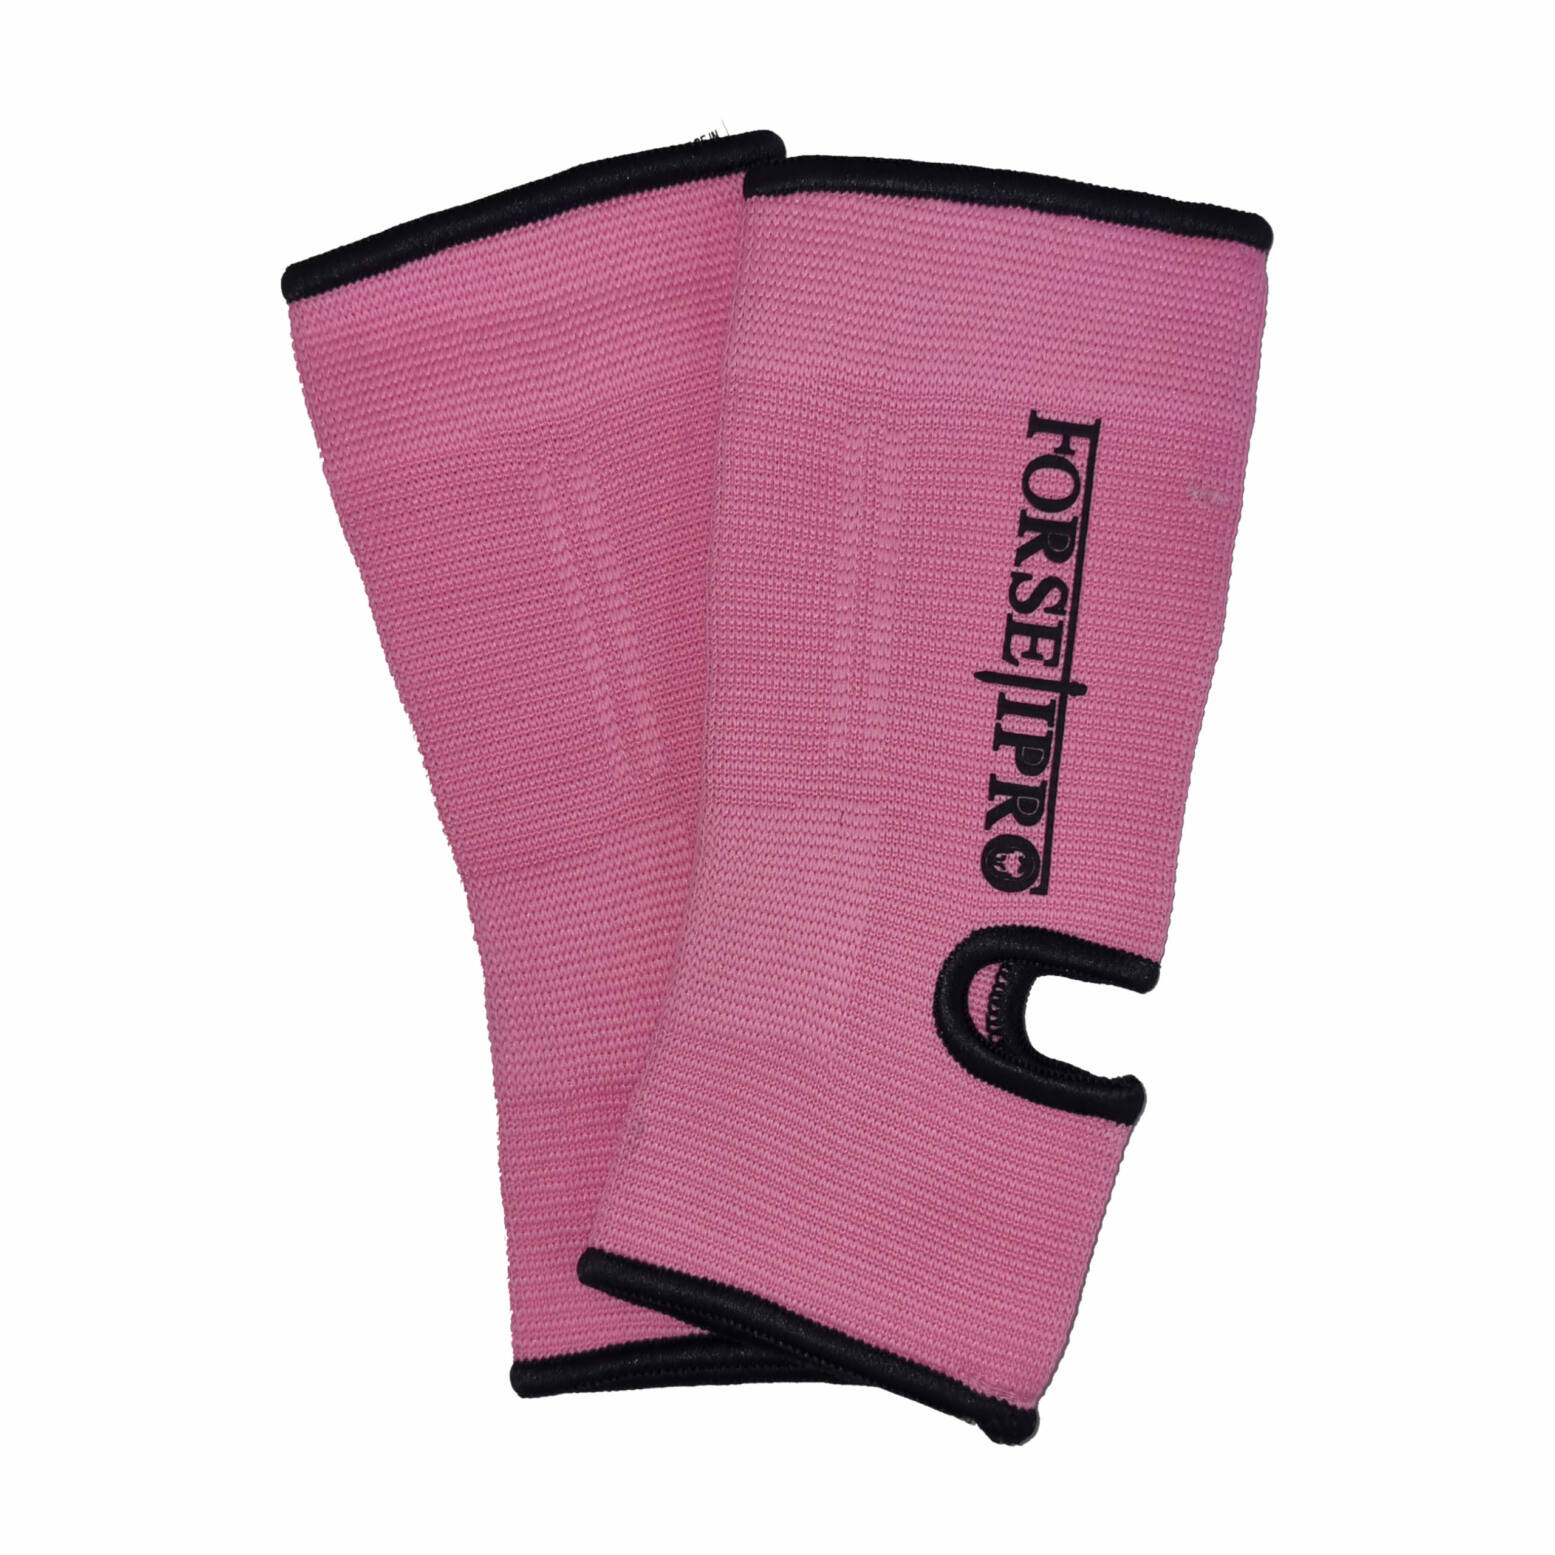 Forseti Pro Enkelkousen B-Stock – Roze met zwart 1